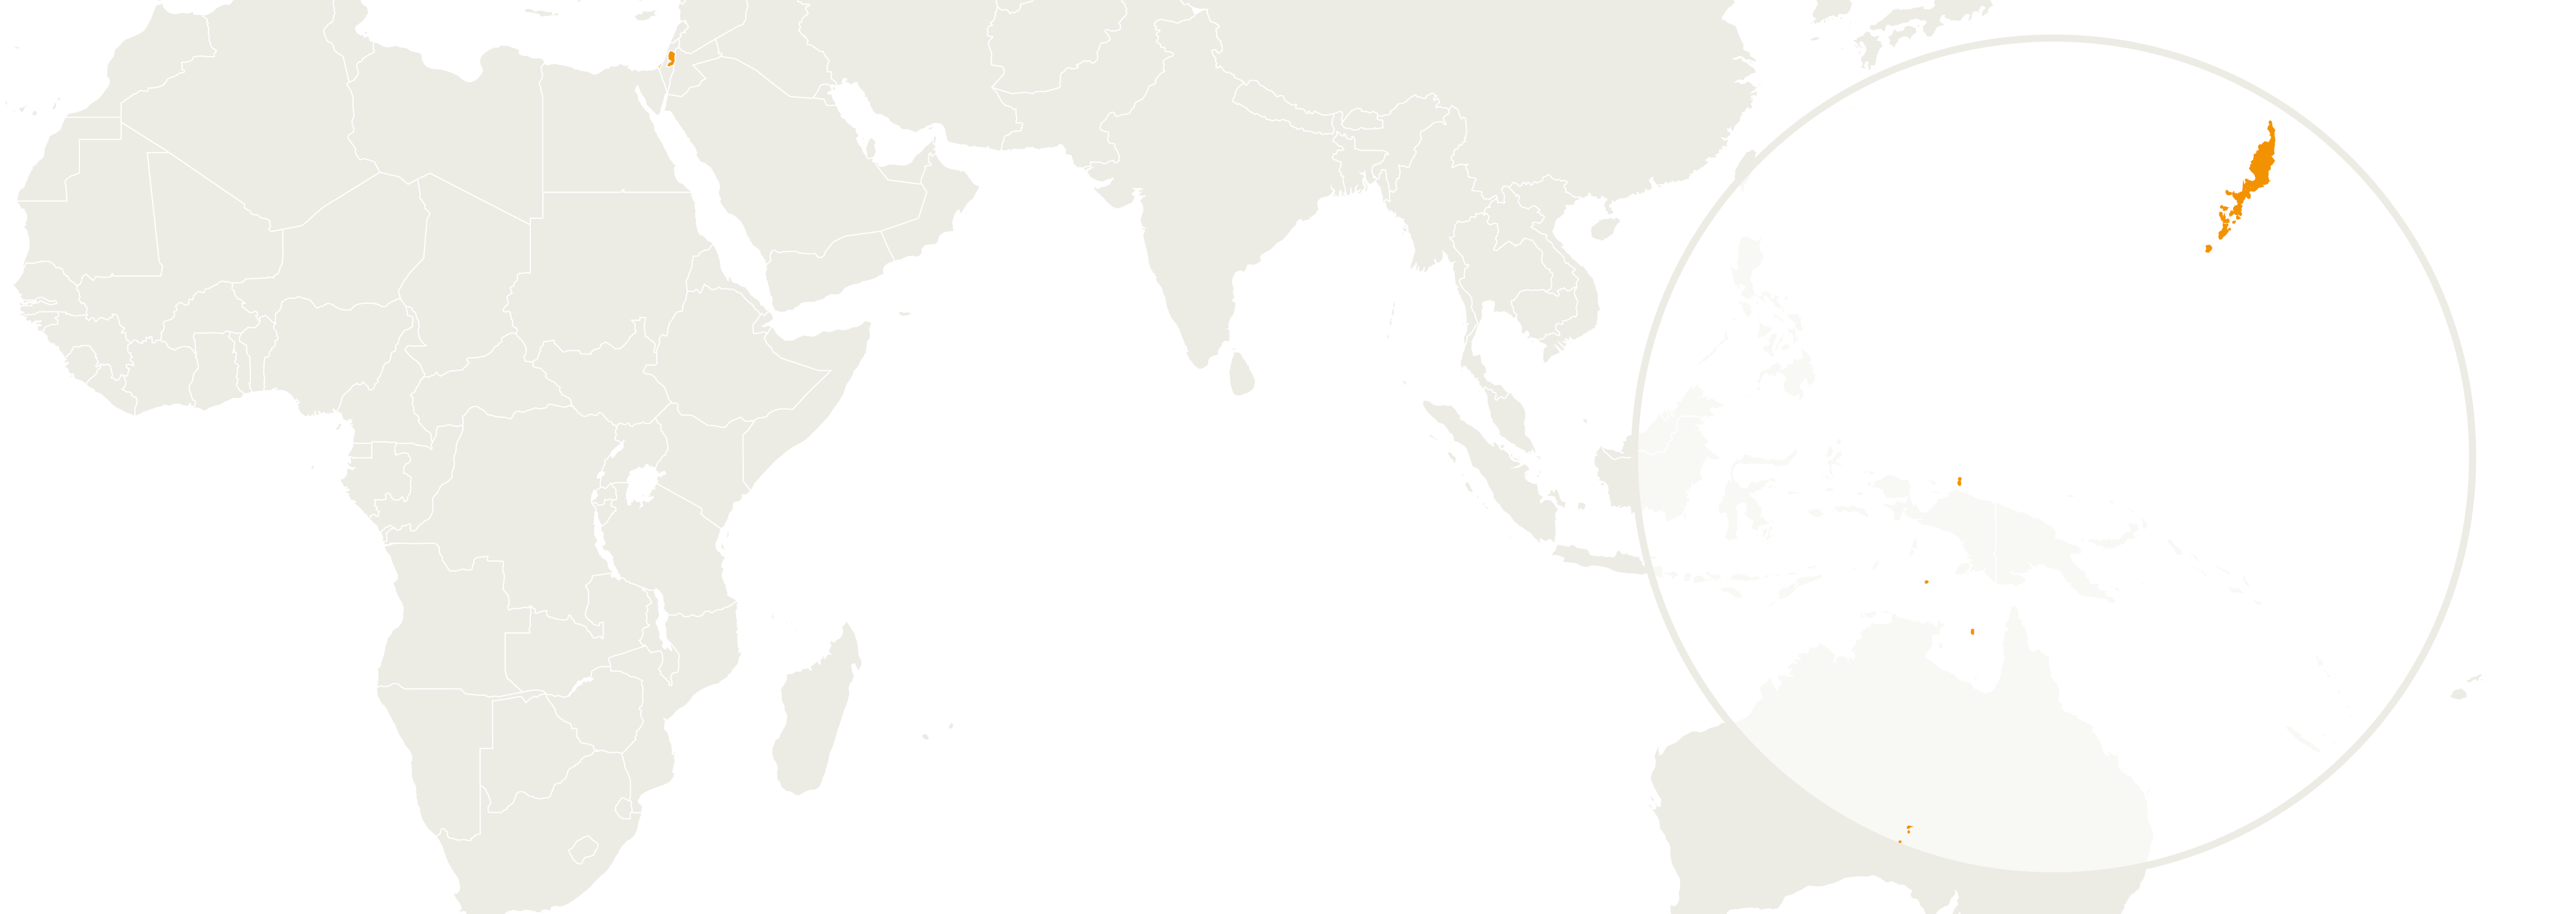 Map of Palaos